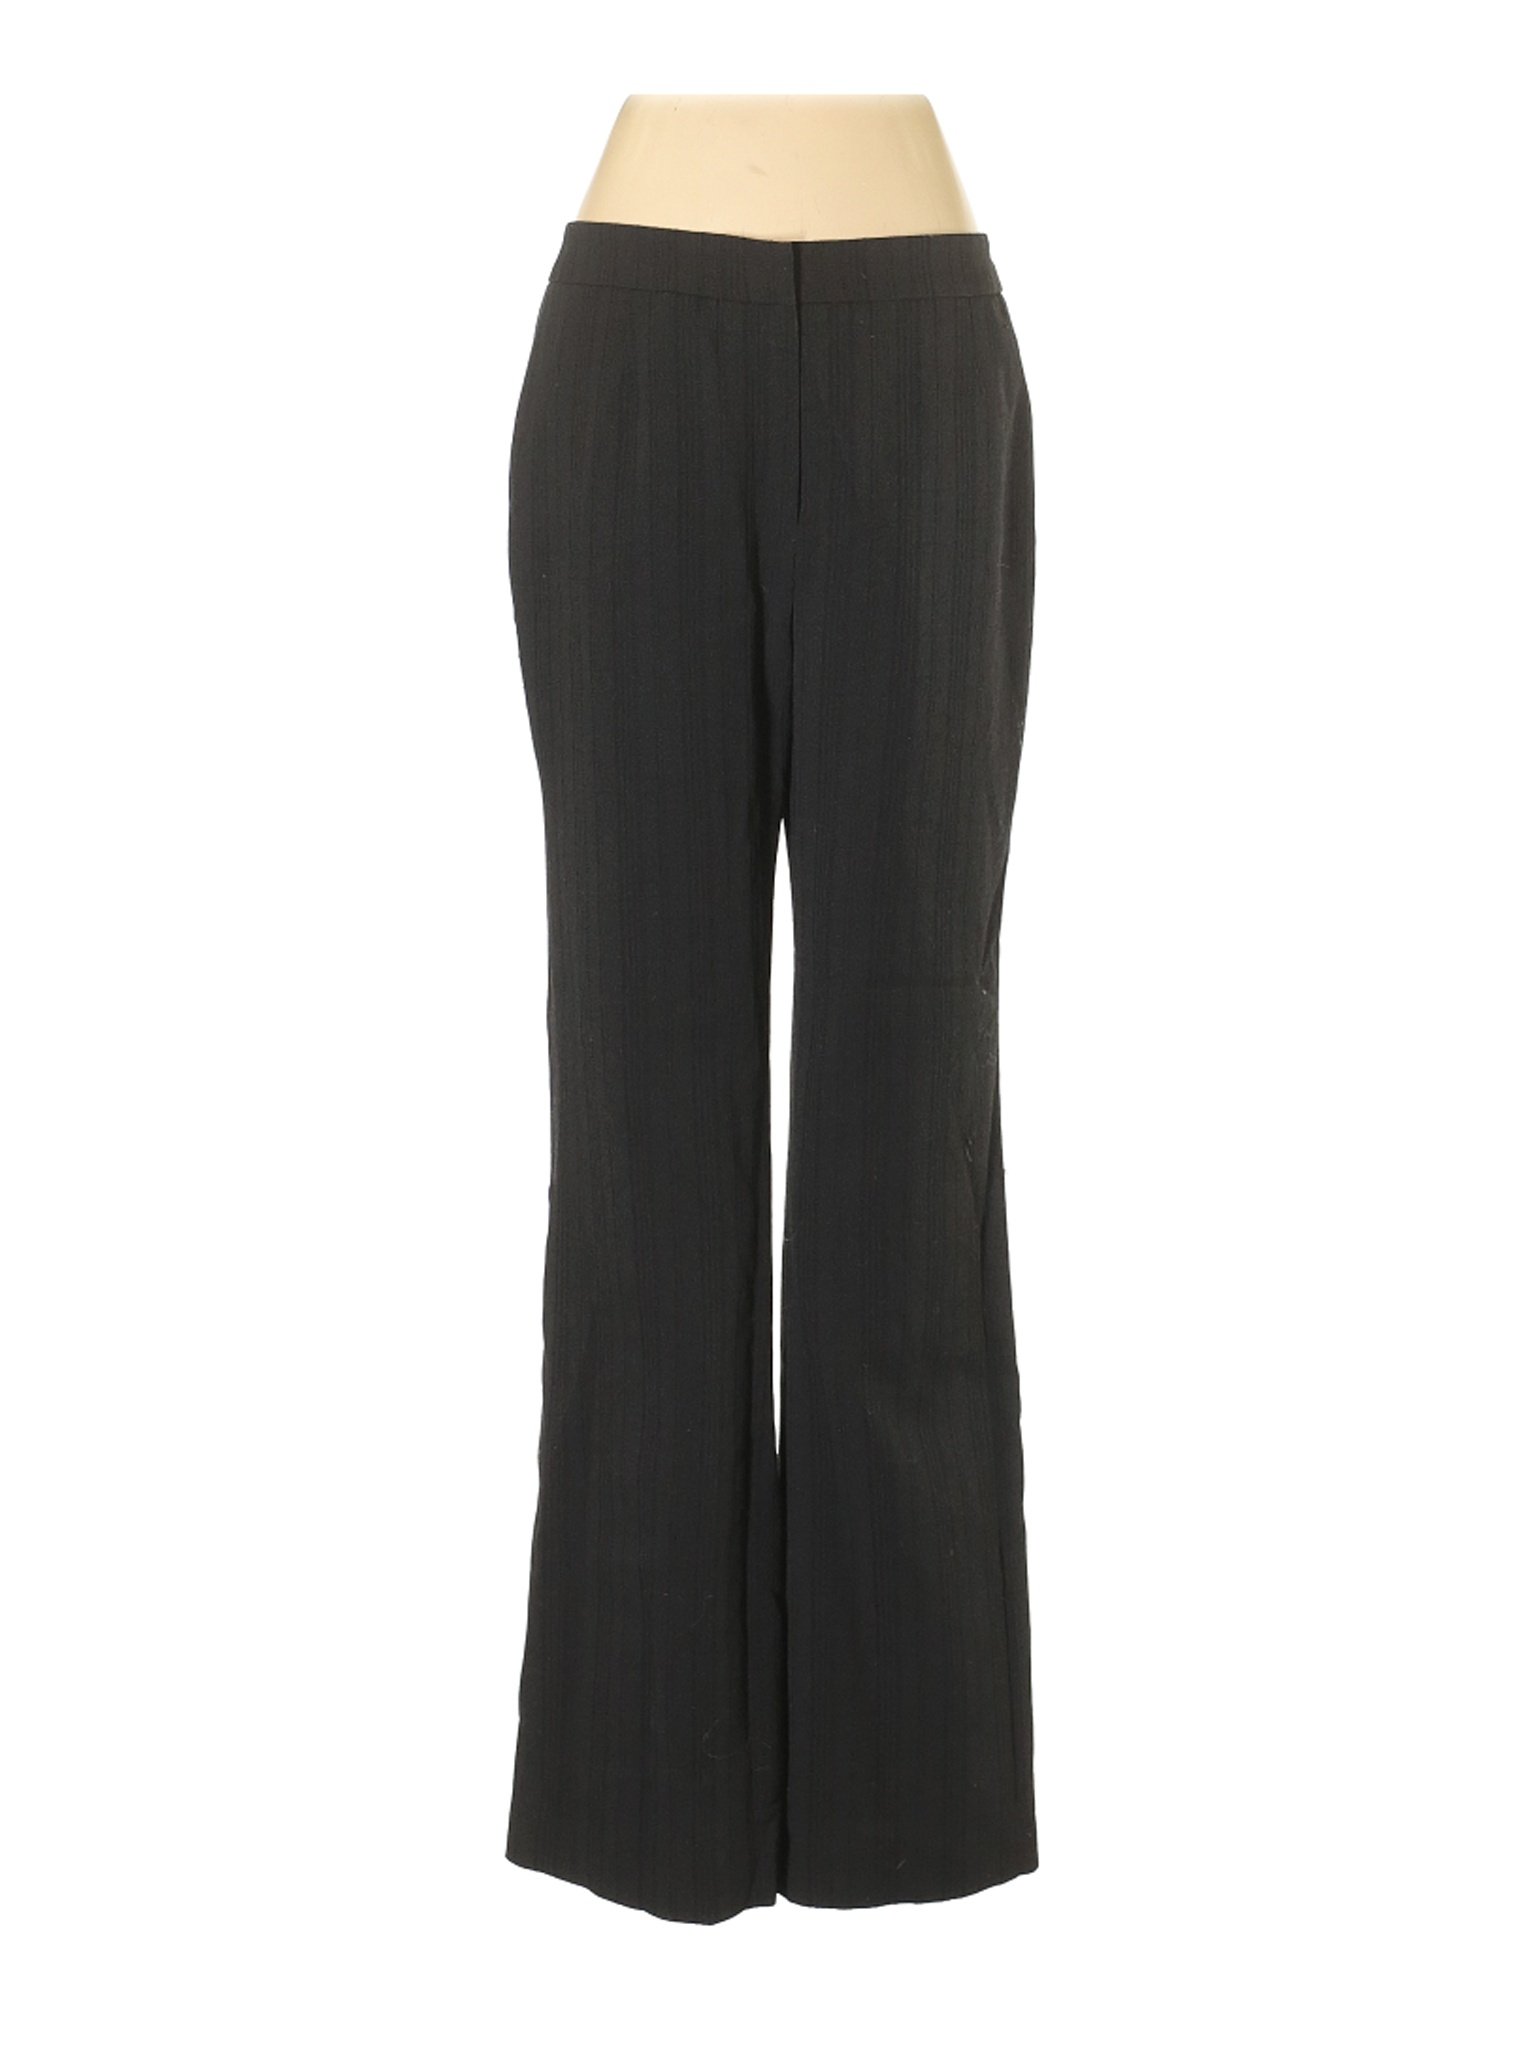 Le Suit Women Black Dress Pants 6 | eBay